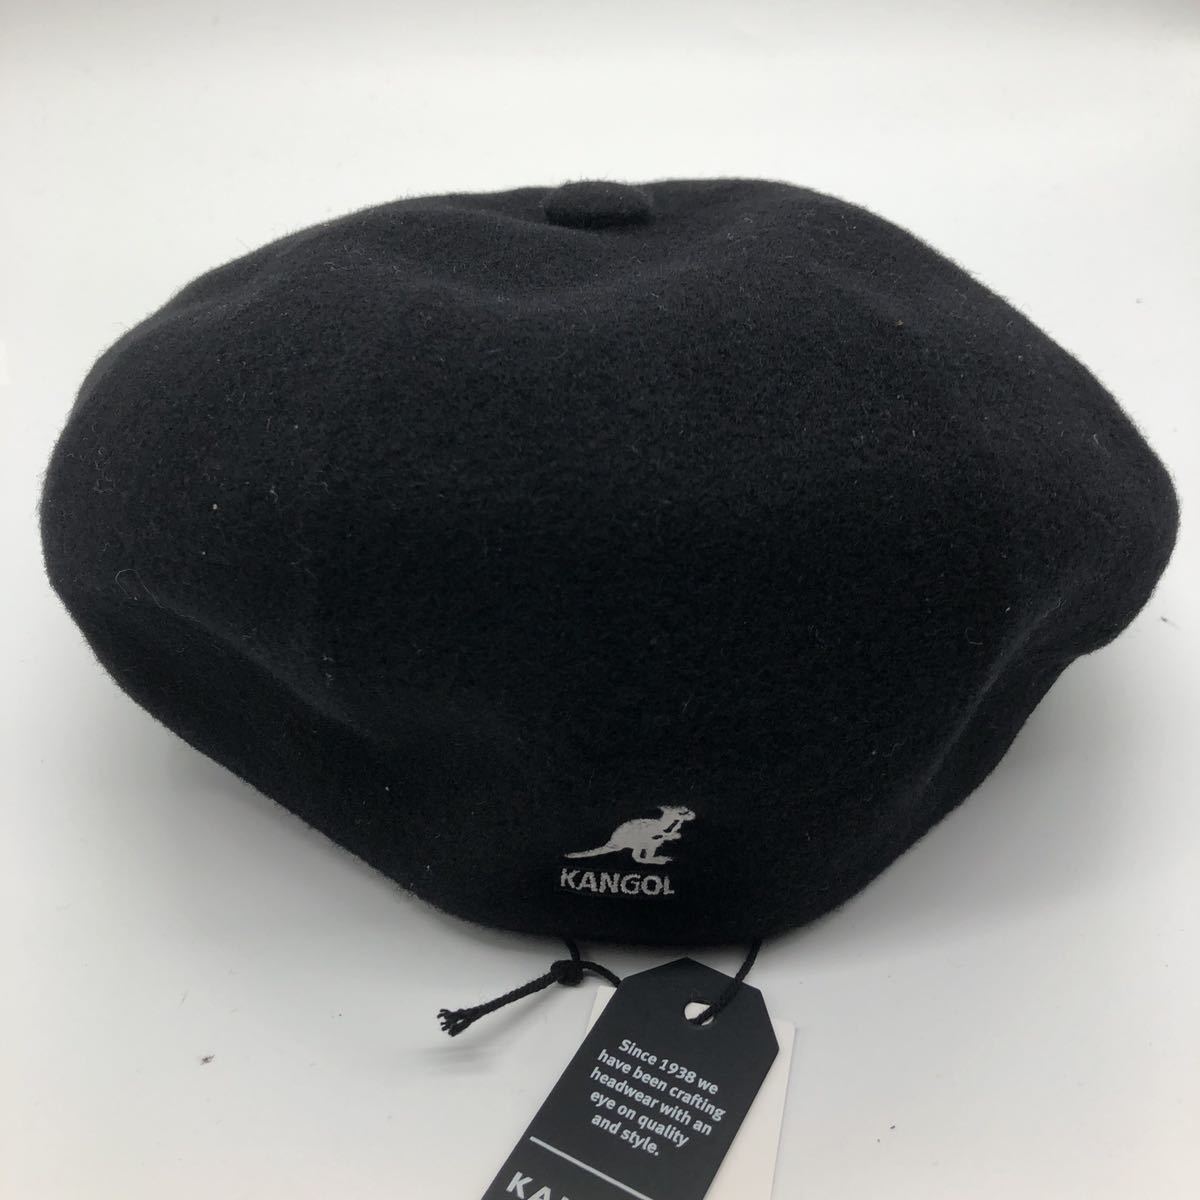  новый товар не использовался KANGOL M размер шерсть кепка hunting cap WOOL GALAXY черный обычная цена \\7884